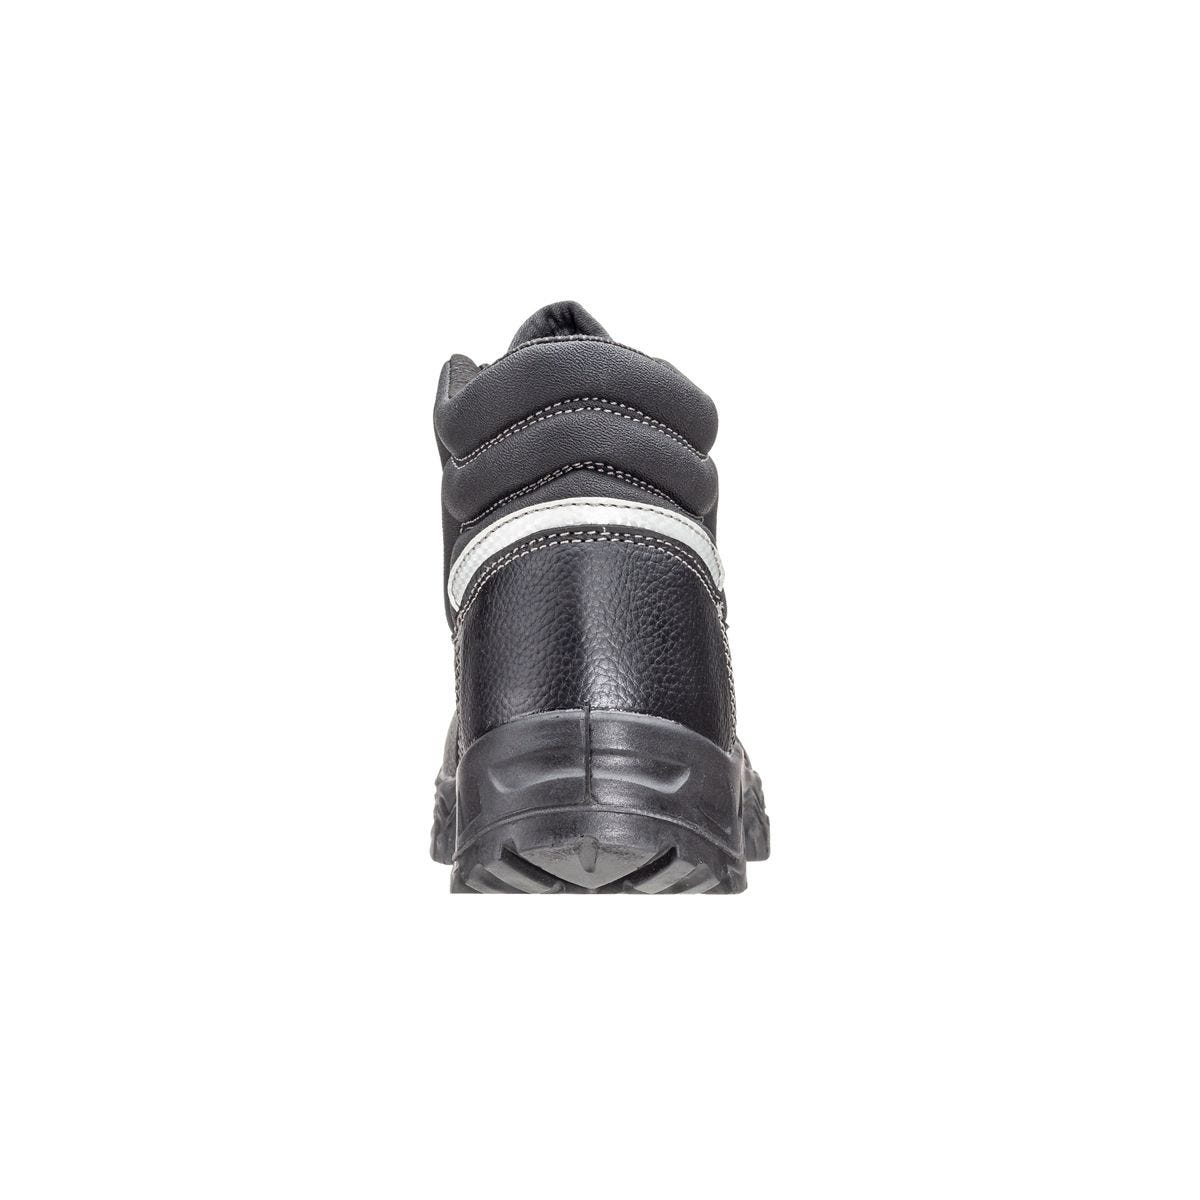 Chaussures de sécurité hautes Azurite II S3 ESD noir - Coverguard - Taille 45 4